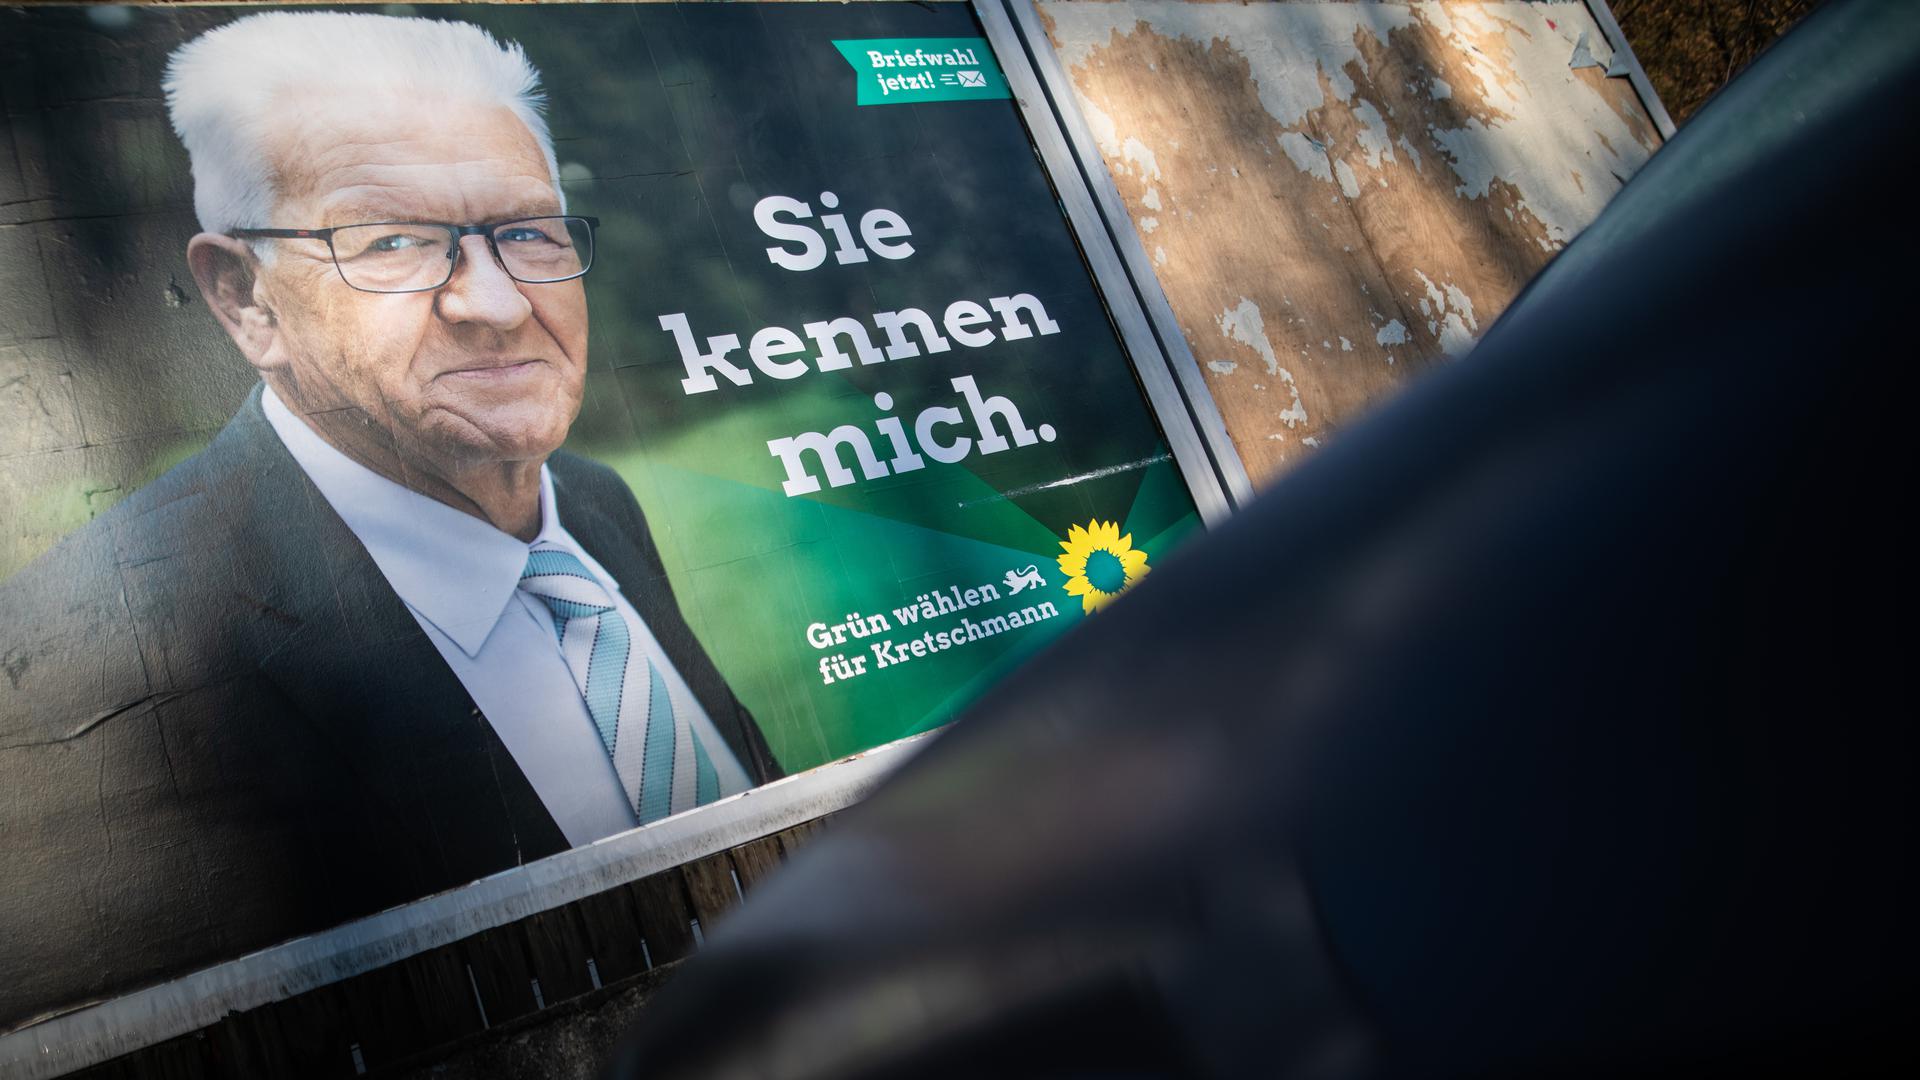 Der Wahlkampf der Grünen mit Spitzenkandidat Winfried Kretschmann zeigte auch in der Ortenau Erfolge.